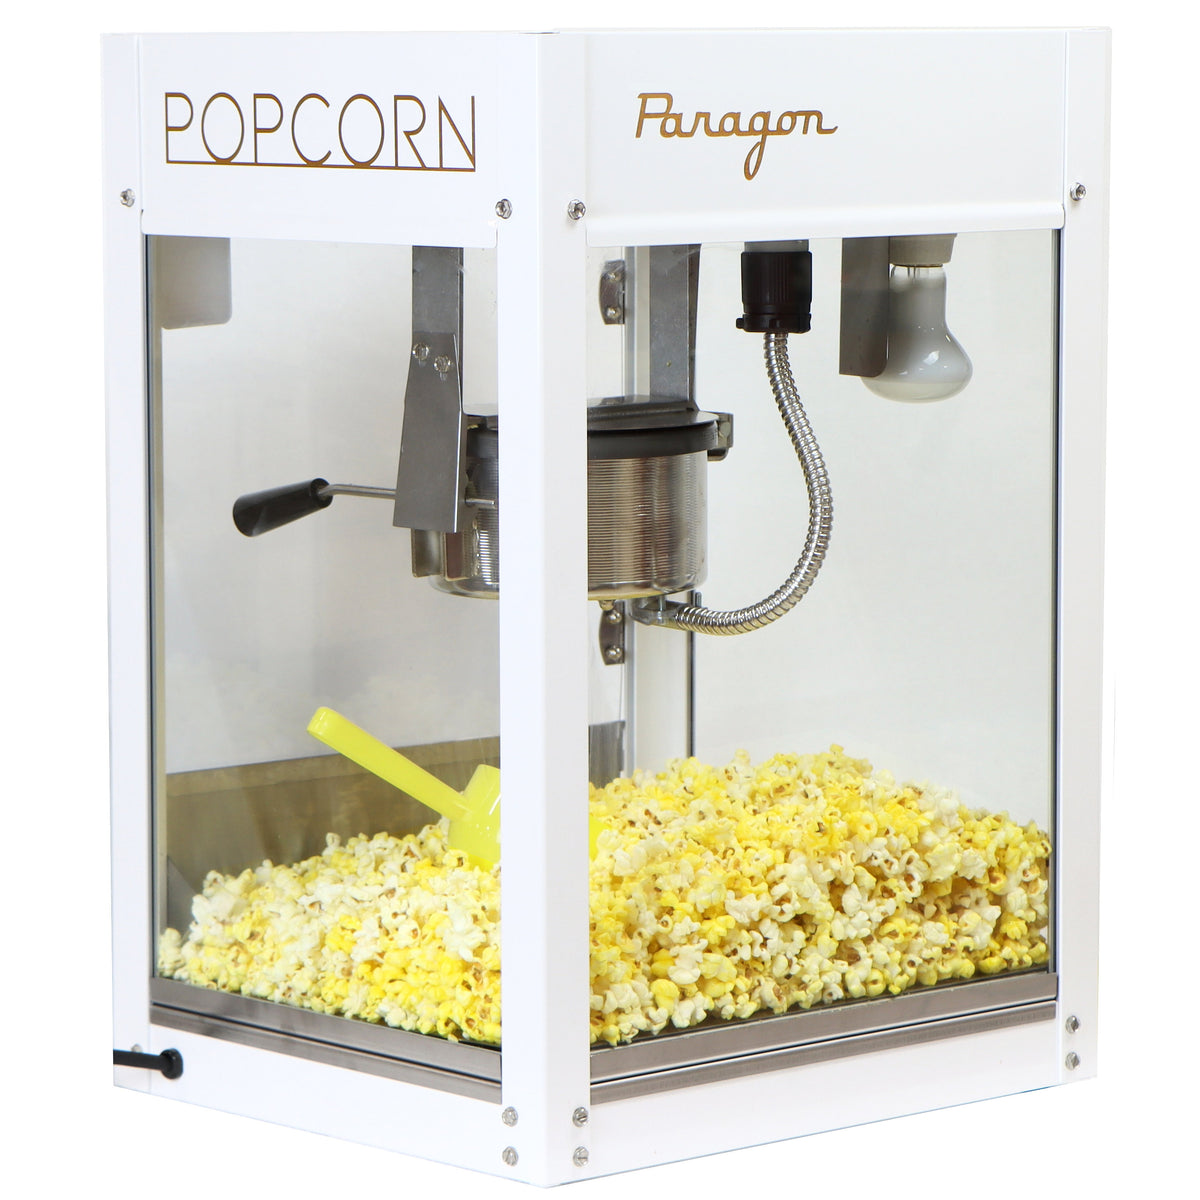 Paragon 1040 Plastic Popcorn Scoop